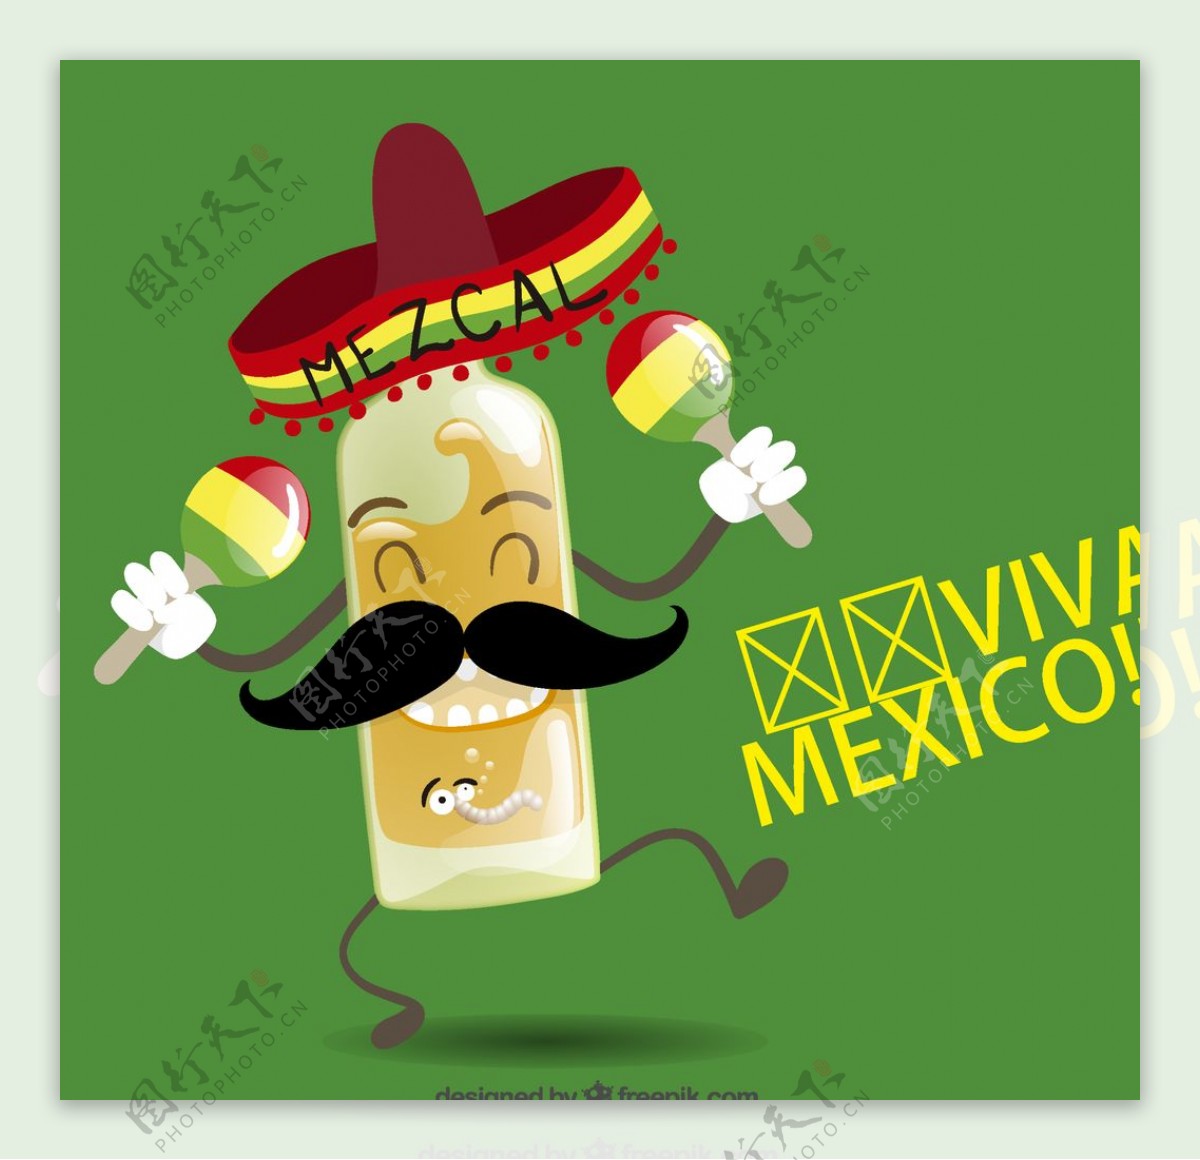 墨西哥龙舌兰酒图片